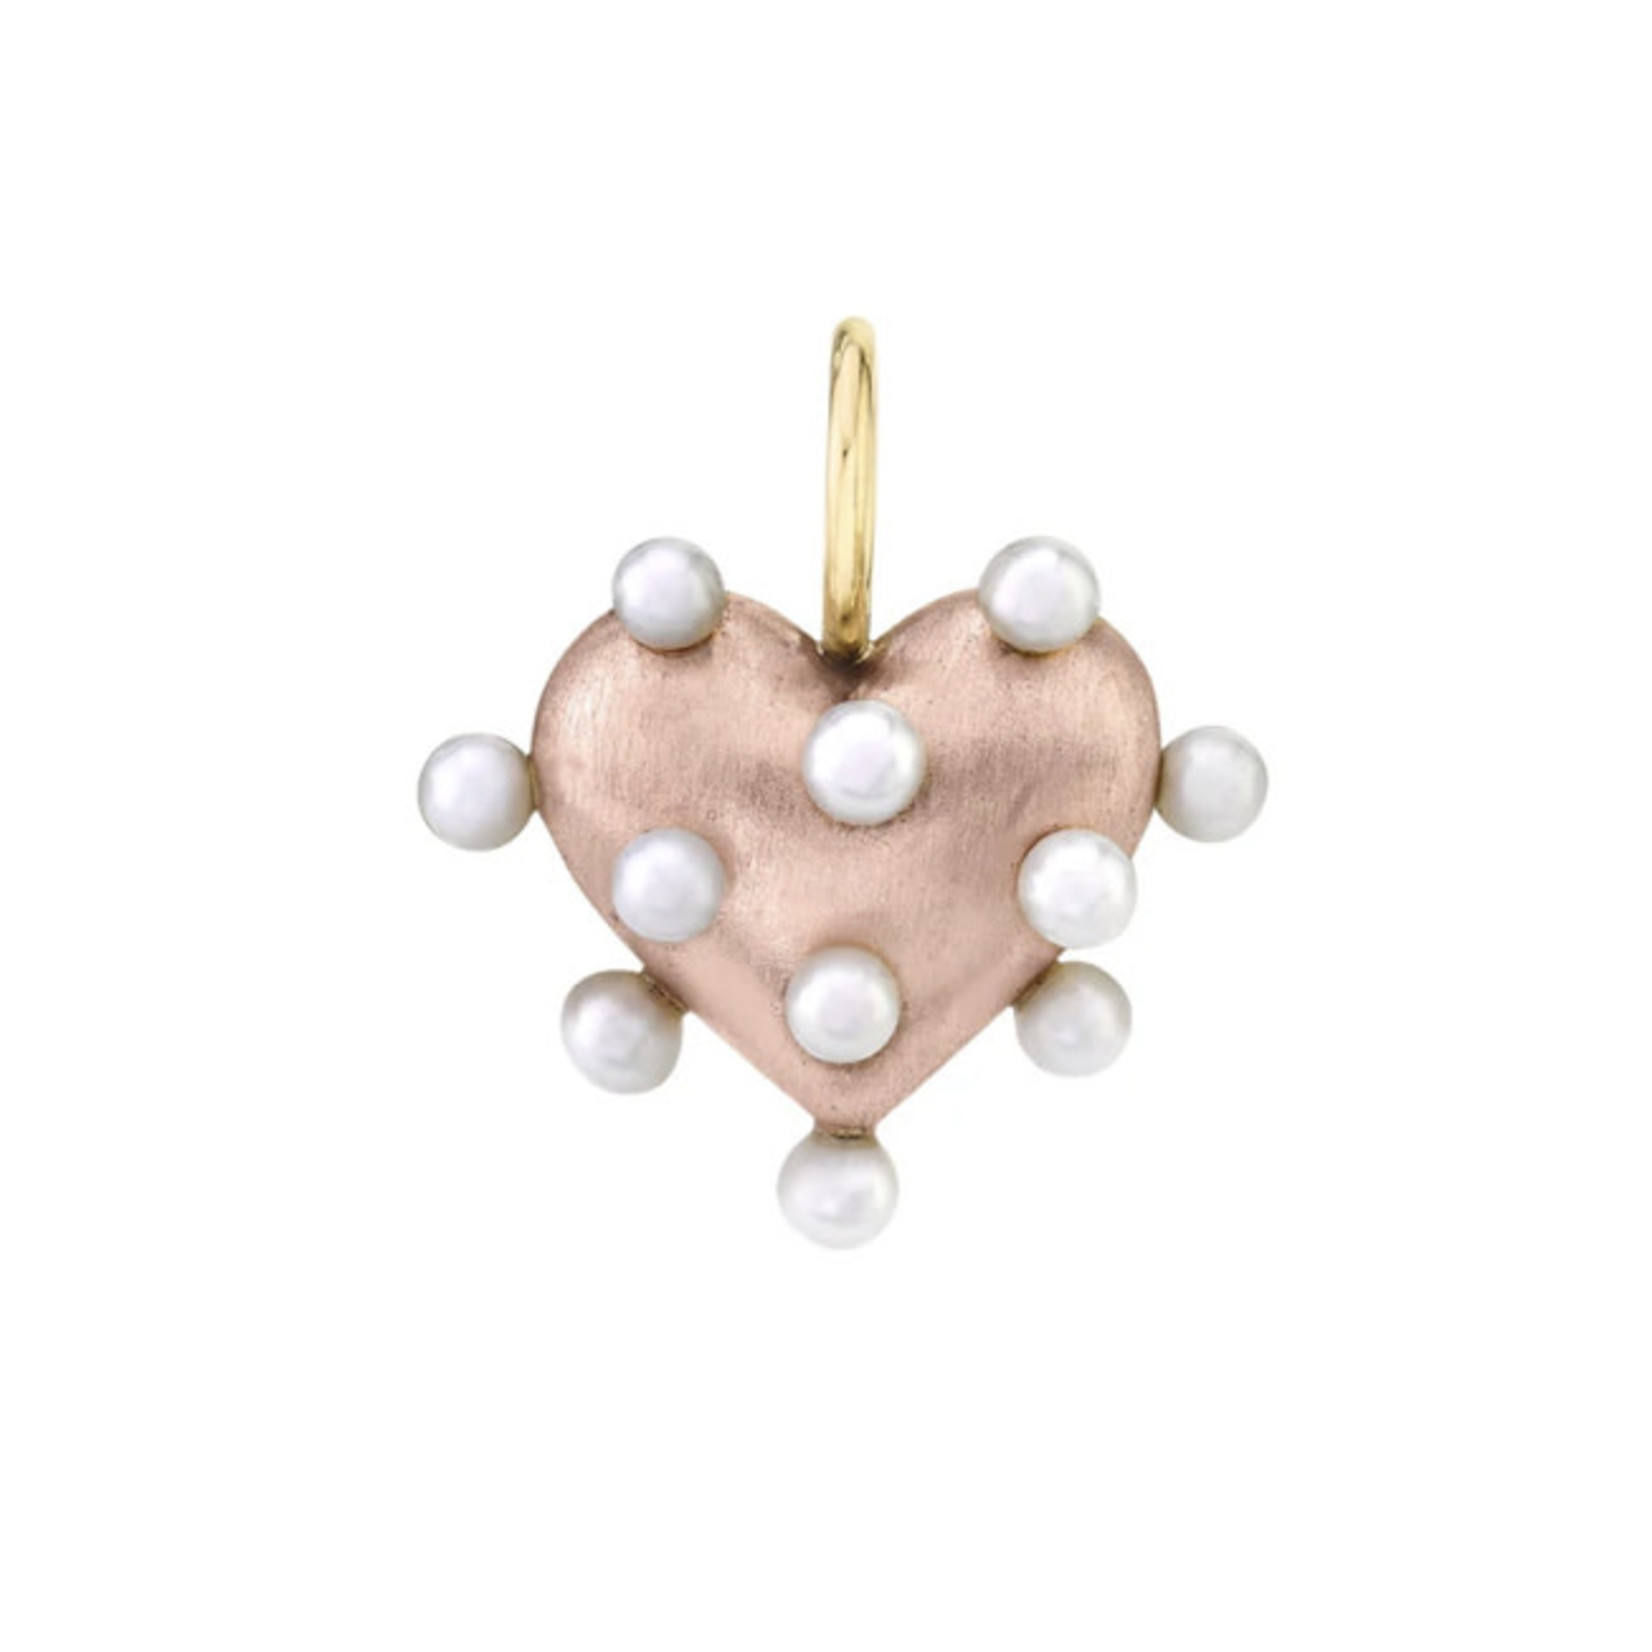 Rachel Quinn Rachel Quinn | Petite Pin Cushion Heart Charm; 14k gold, freshwater pearls